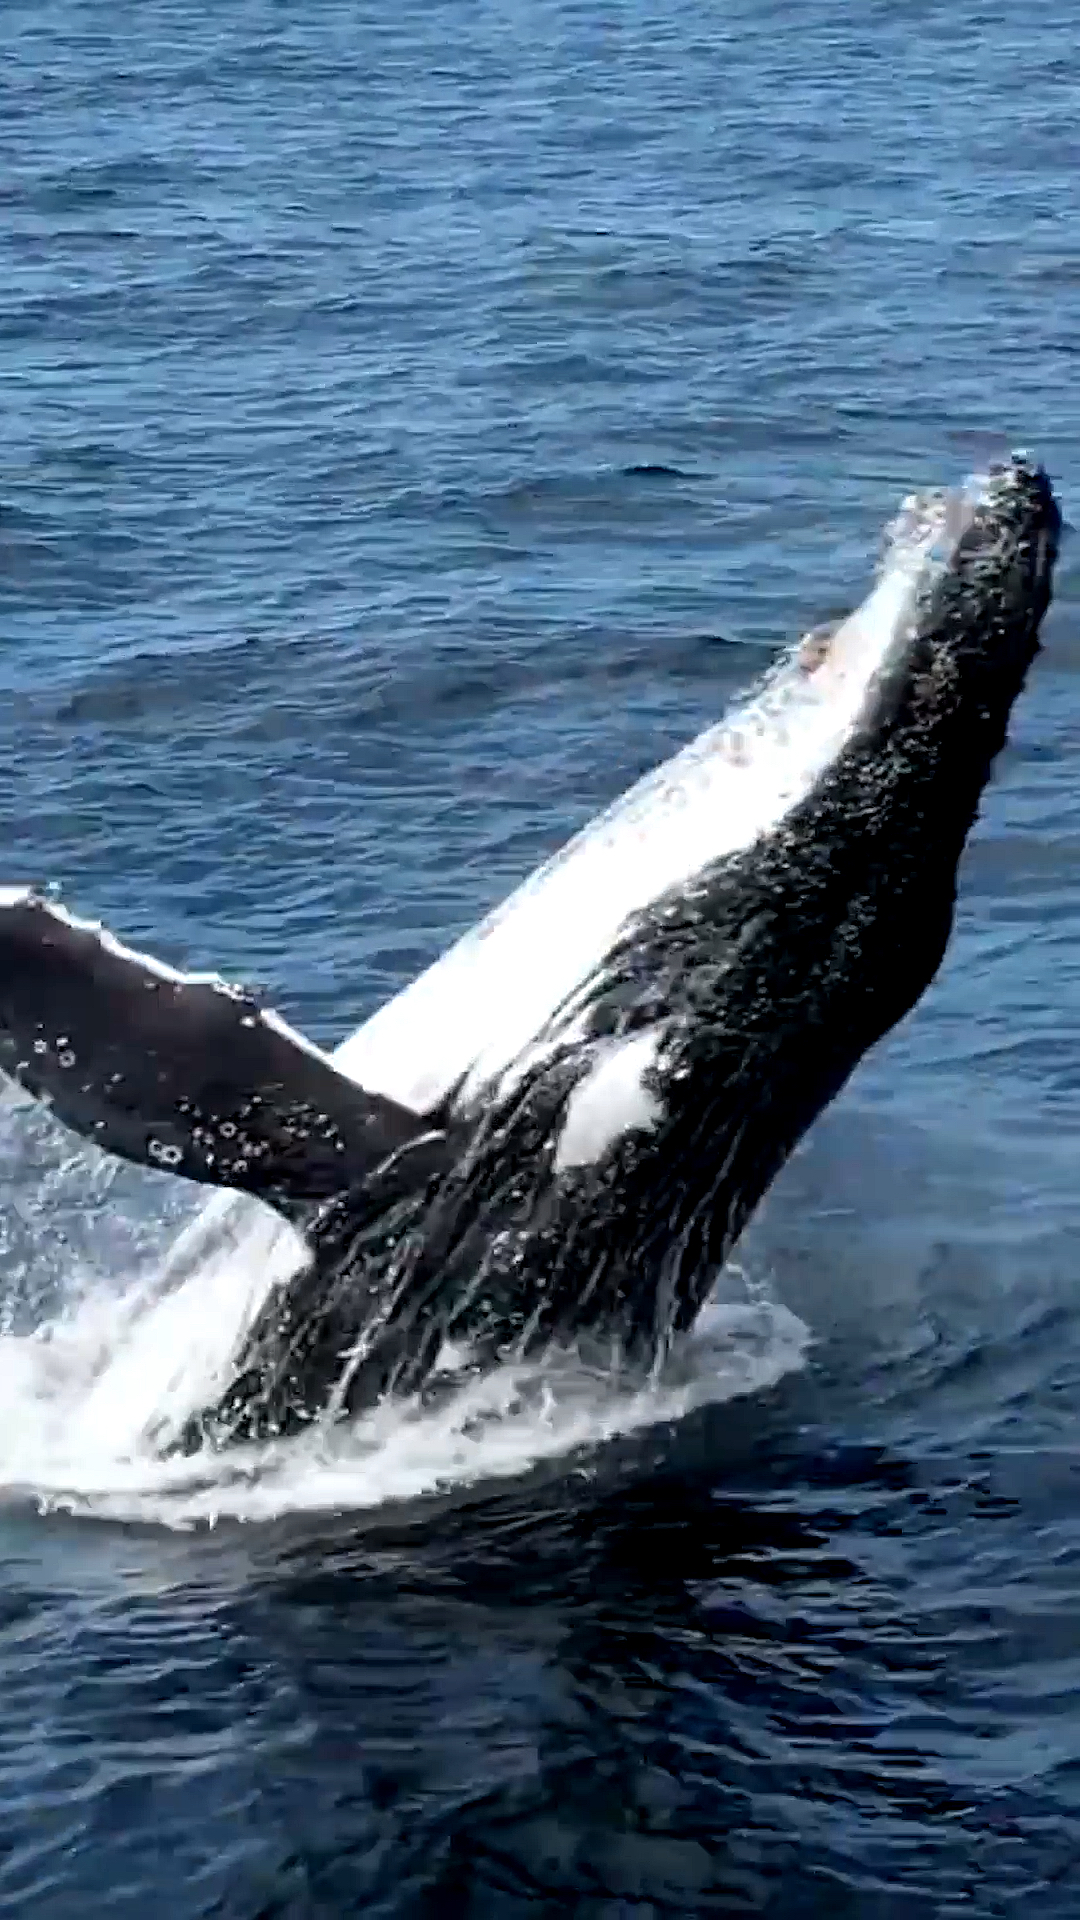 座头鲸#深海座头鲸为了摆脱藤壶的困扰,鲸鱼跃出海面瞬间